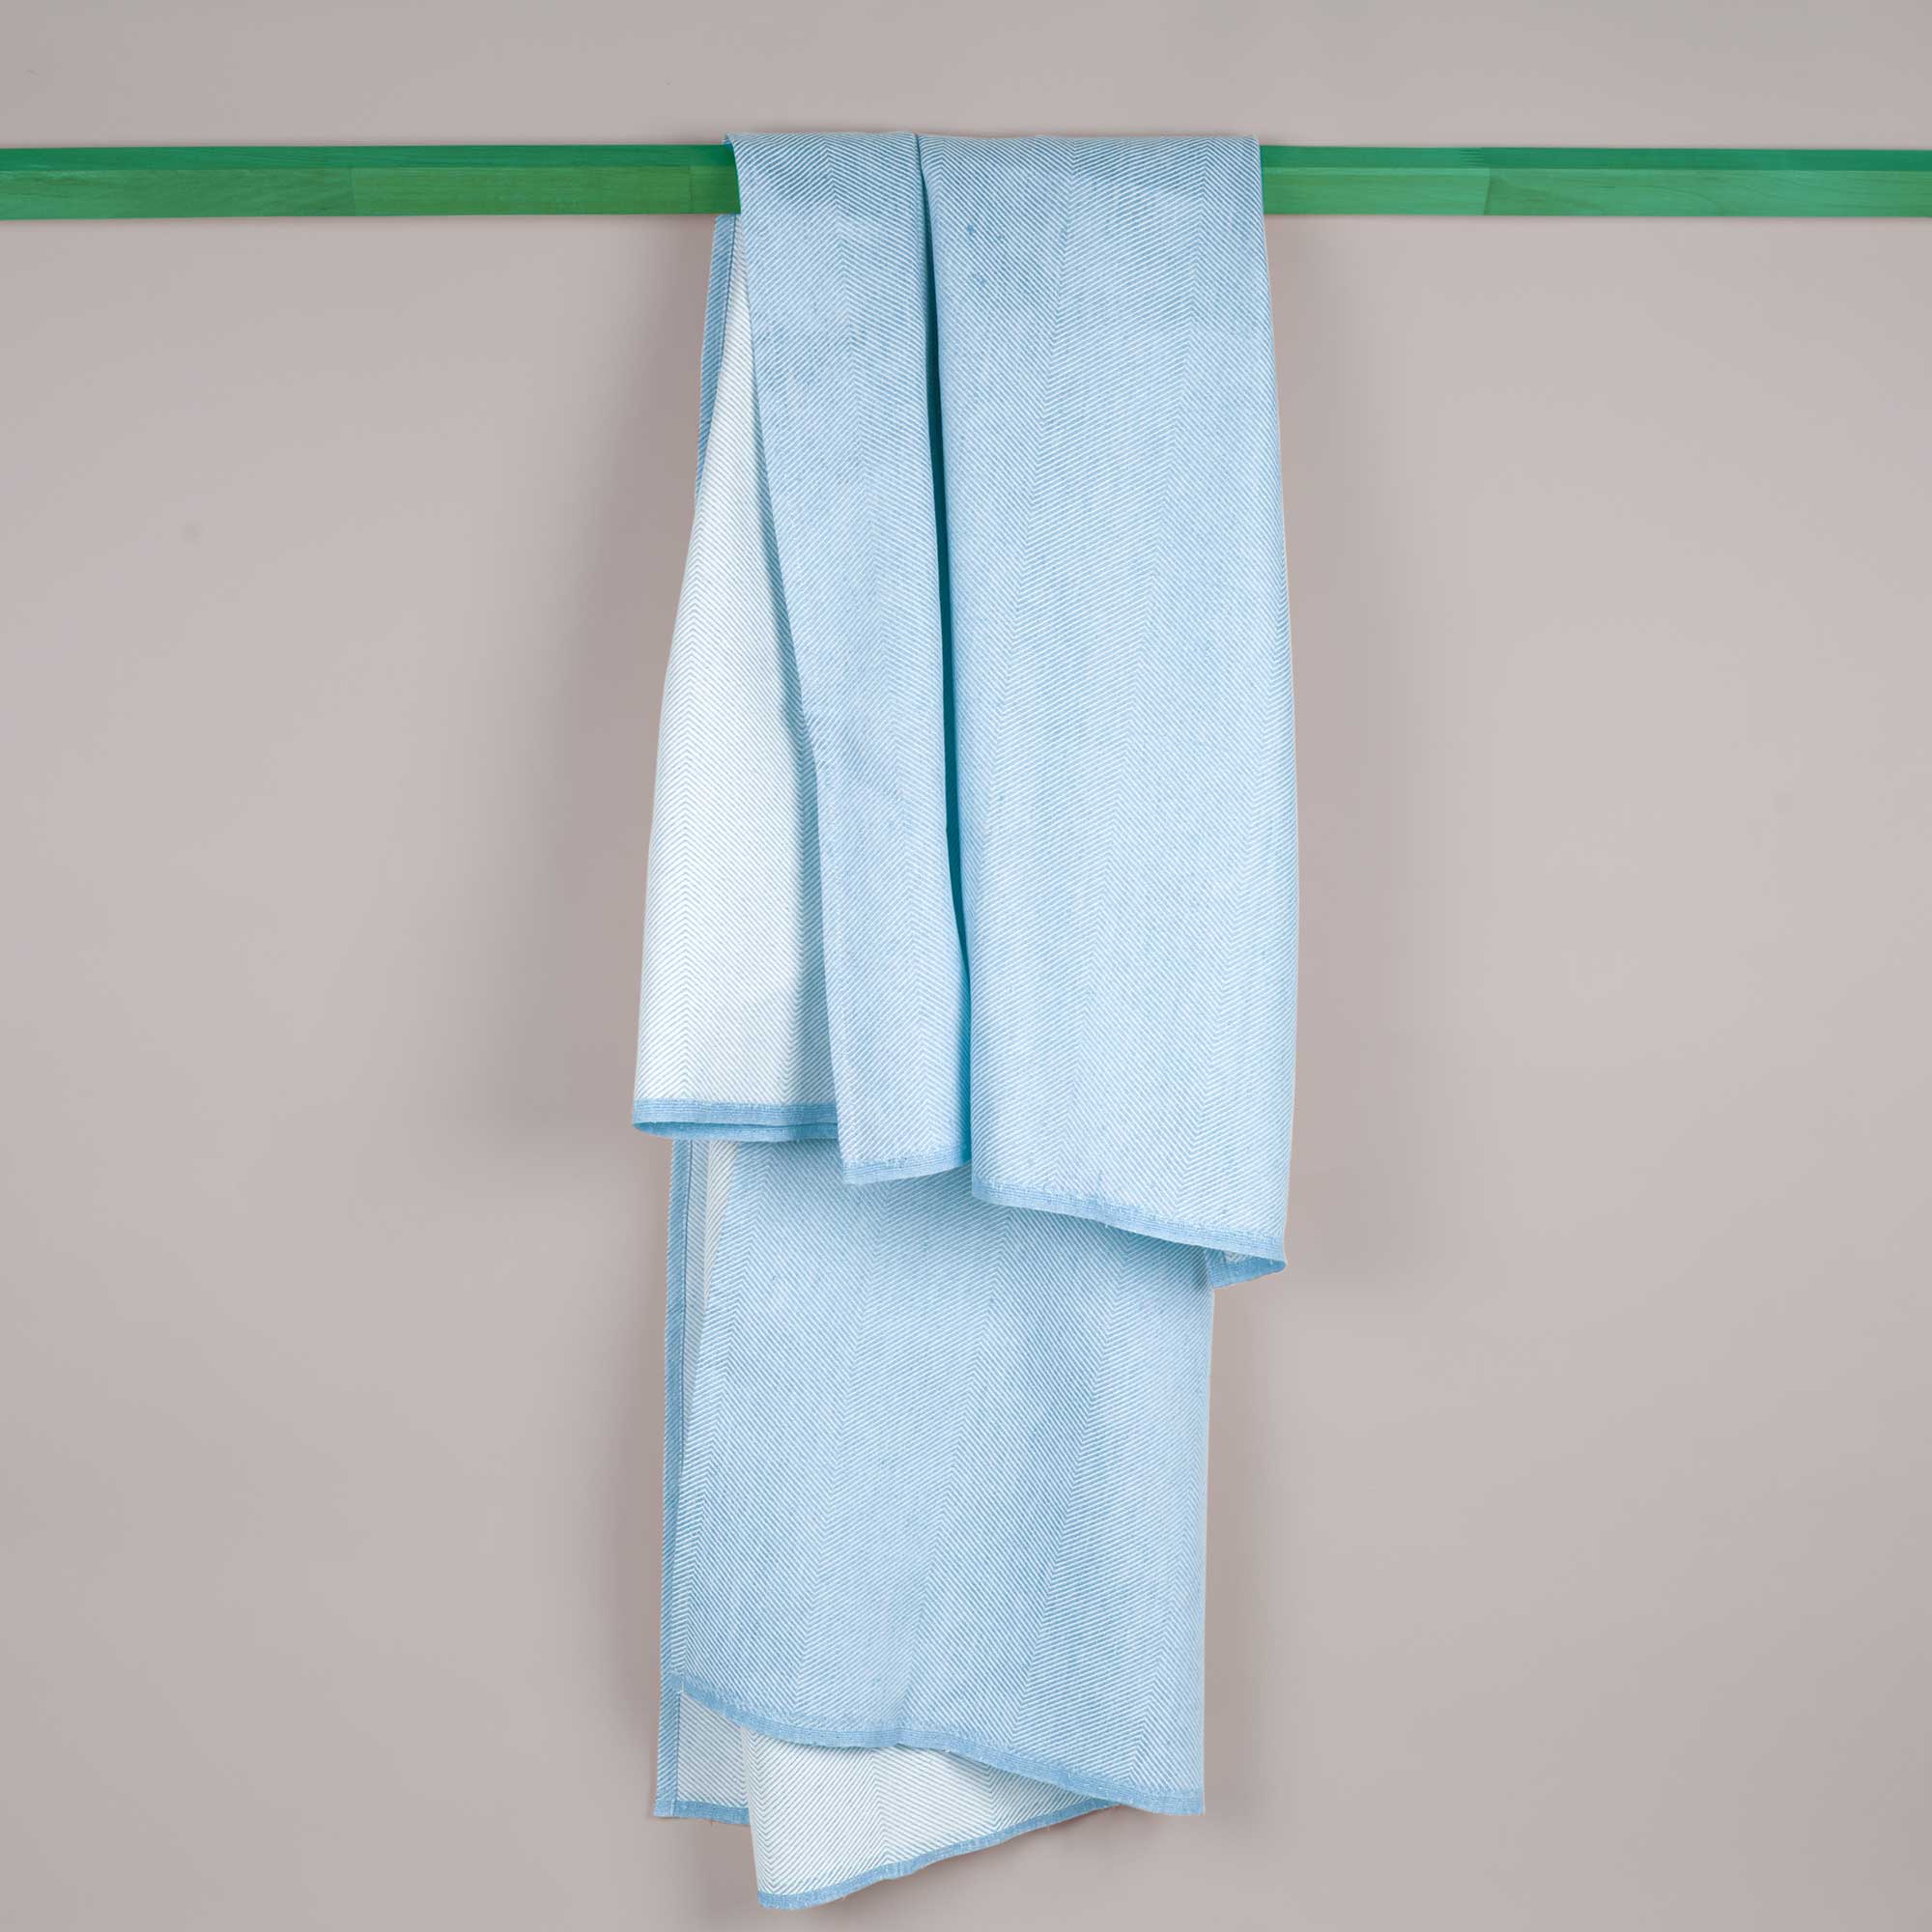 Bath towel, sky blue, linen/cotton, design by Anne Rosenberg, RosenbergCph